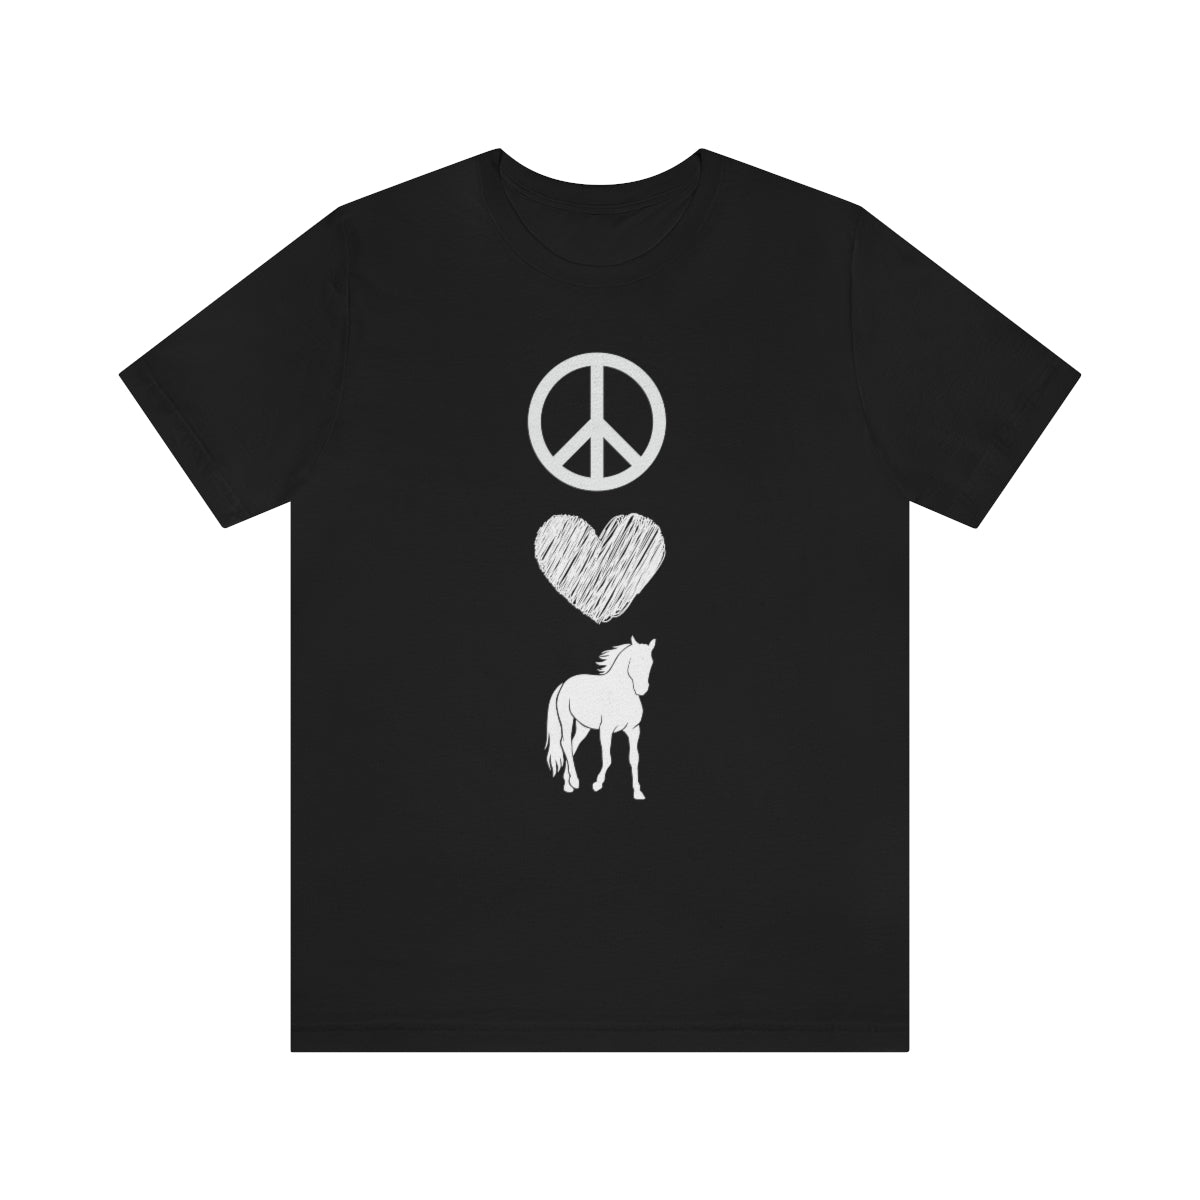 Peace Love Horses